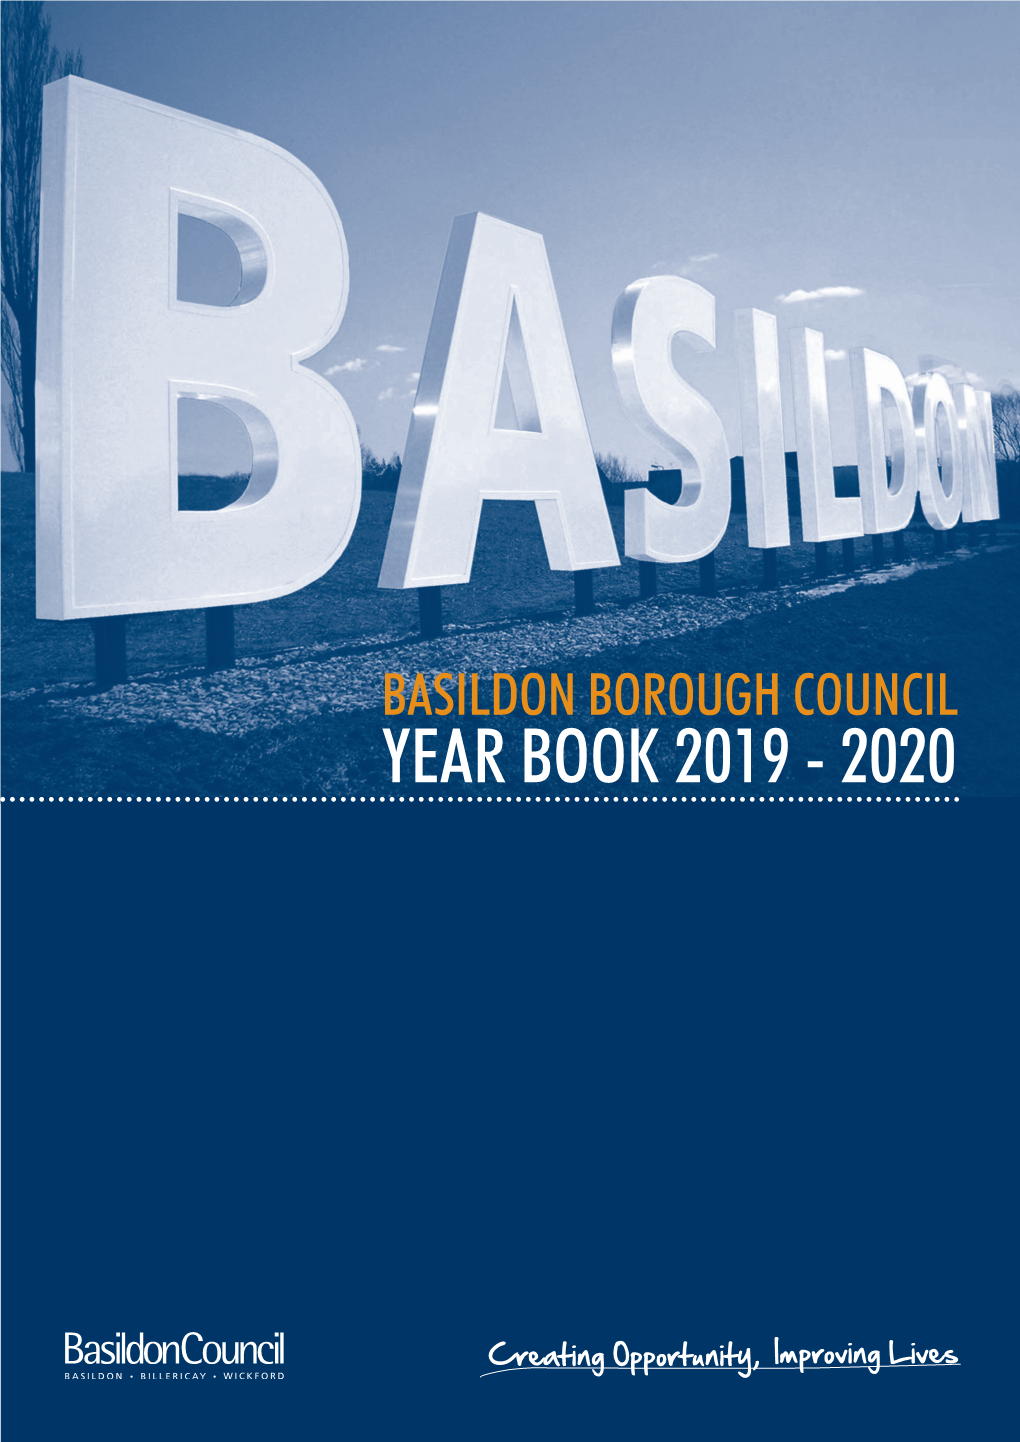 Basildon Borough Council Year Book 2019 - 2020